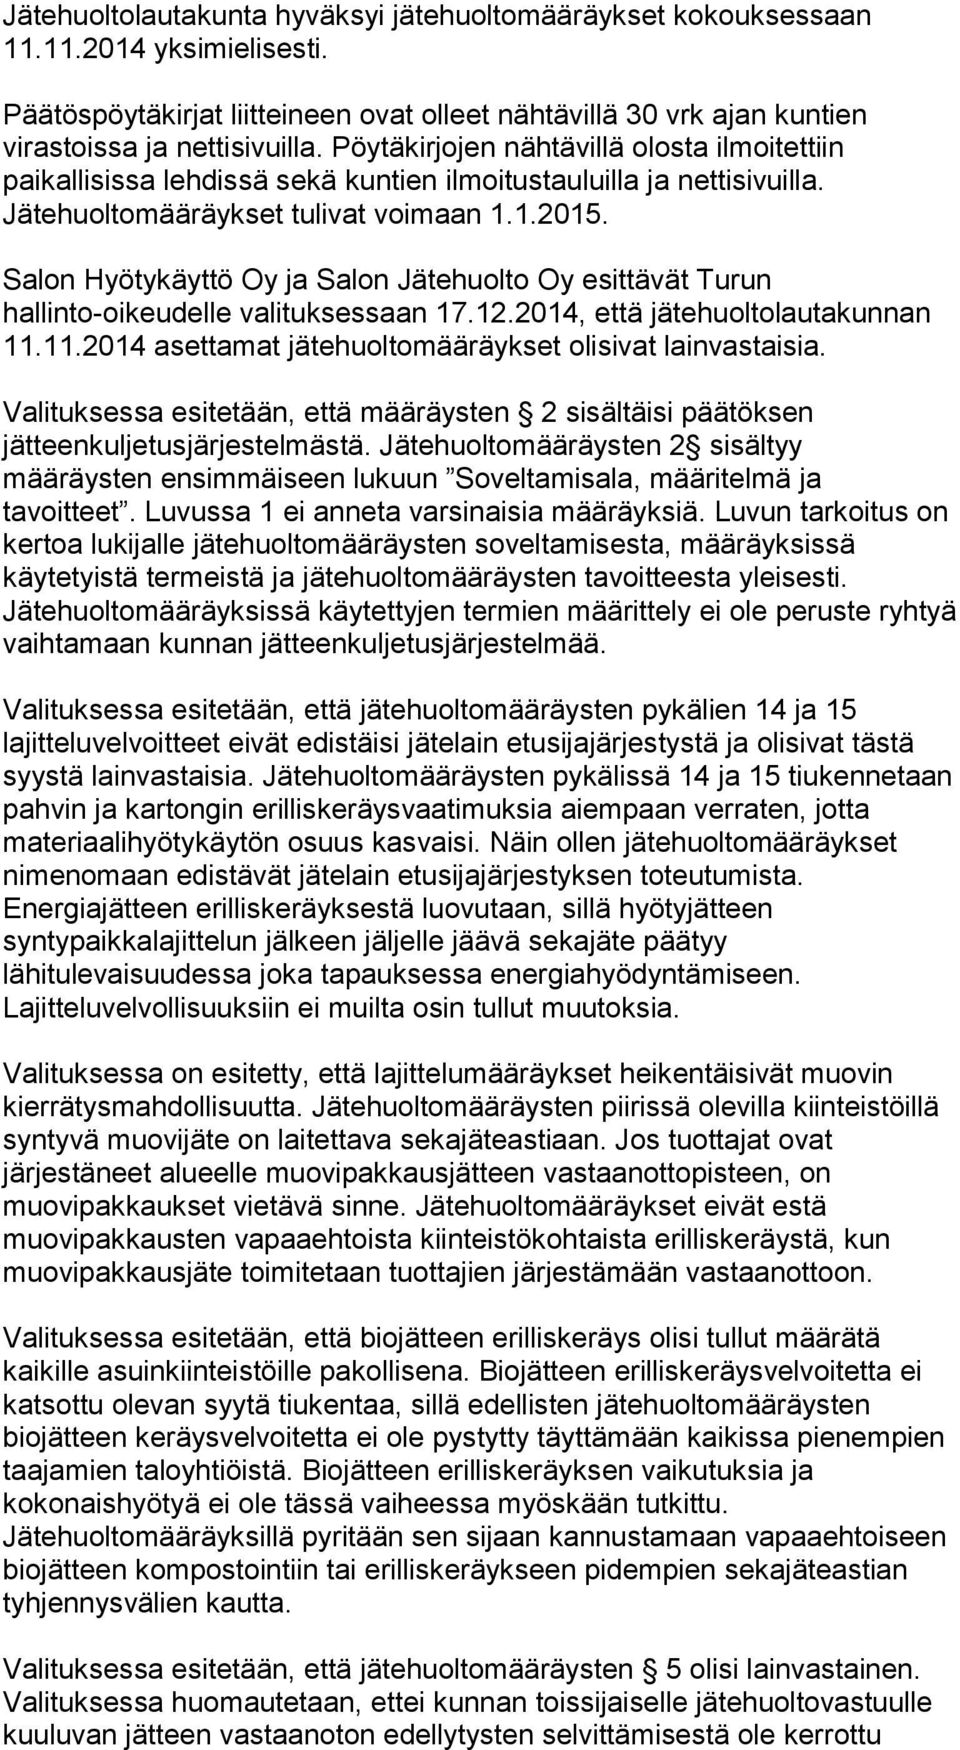 Salon Hyötykäyttö Oy ja Salon Jätehuolto Oy esittävät Turun hallinto-oikeudelle valituksessaan 17.12.2014, että jätehuoltolautakunnan 11.11.2014 asettamat jätehuoltomääräykset olisivat lainvastaisia.